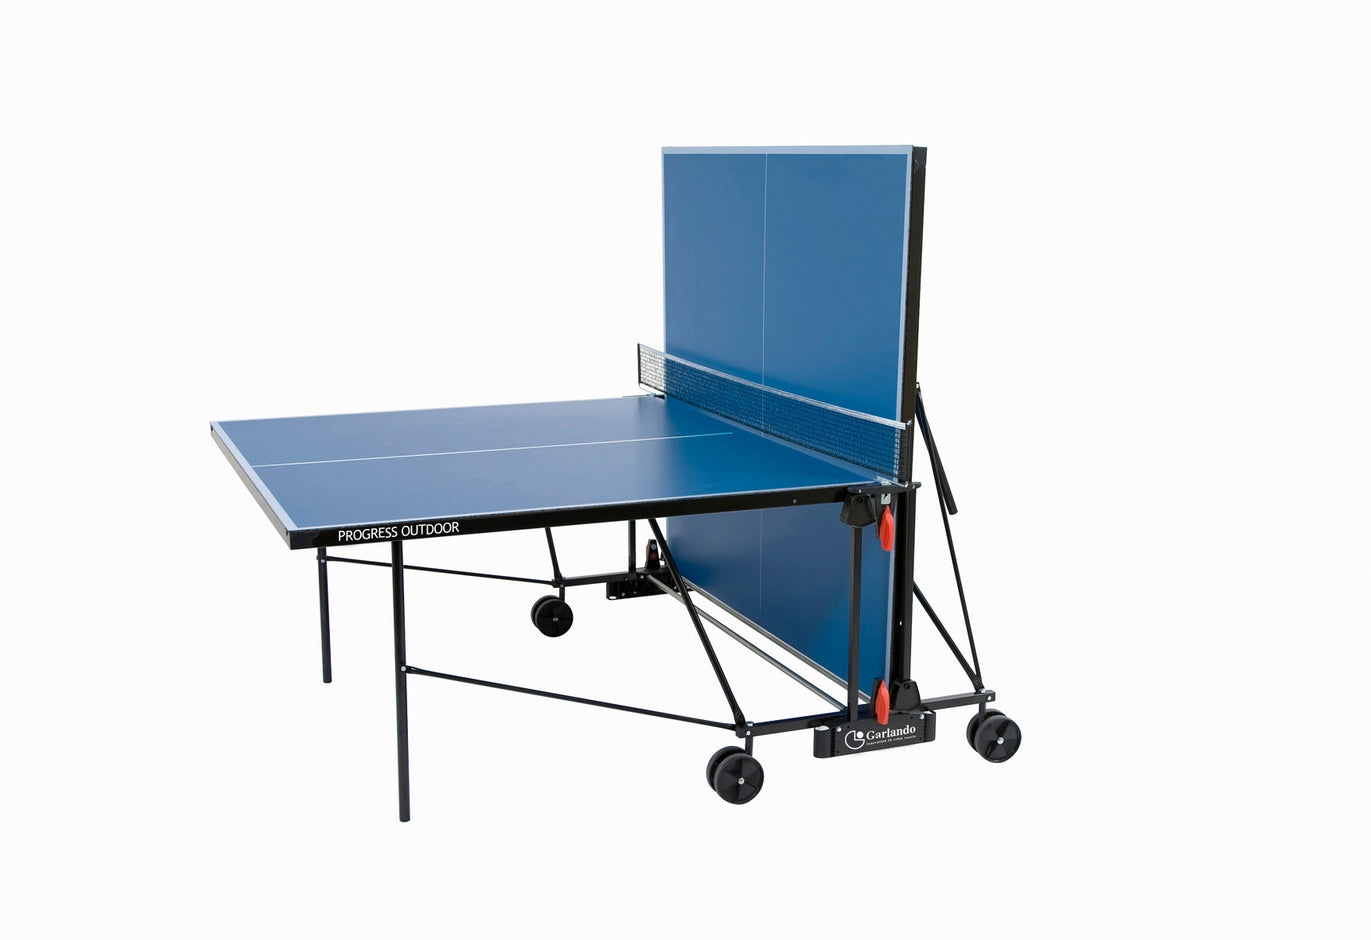 Ping pong PROGRESS OUTDOOR con ruote - piano blu Garlando